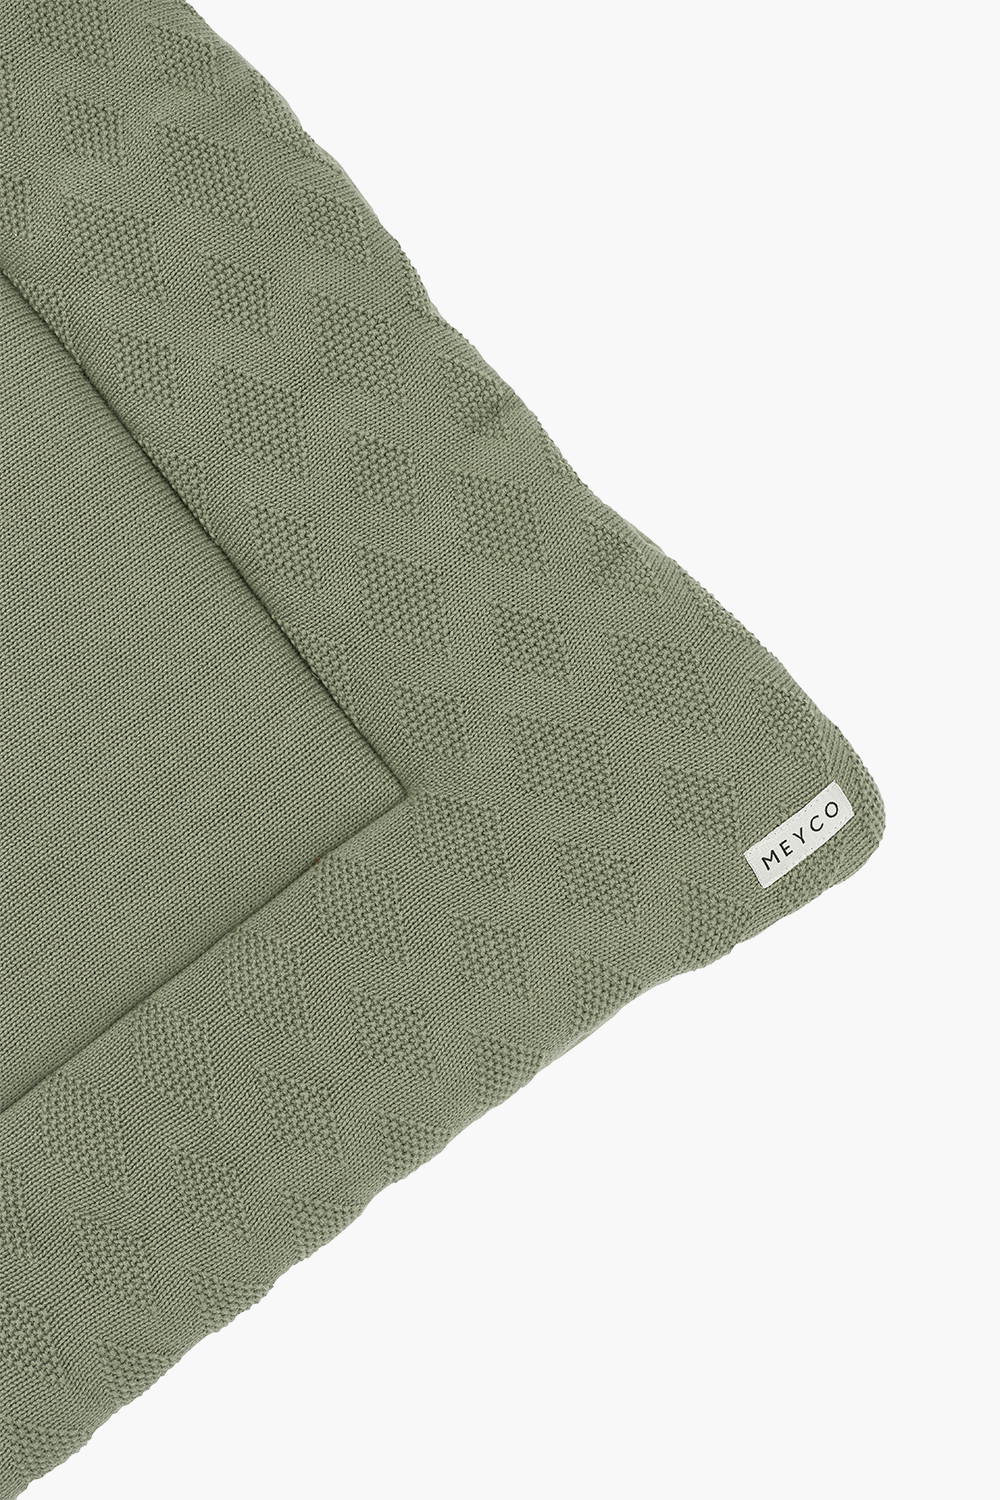 Playpen mattress biological Diamond - forest green - 77x97cm